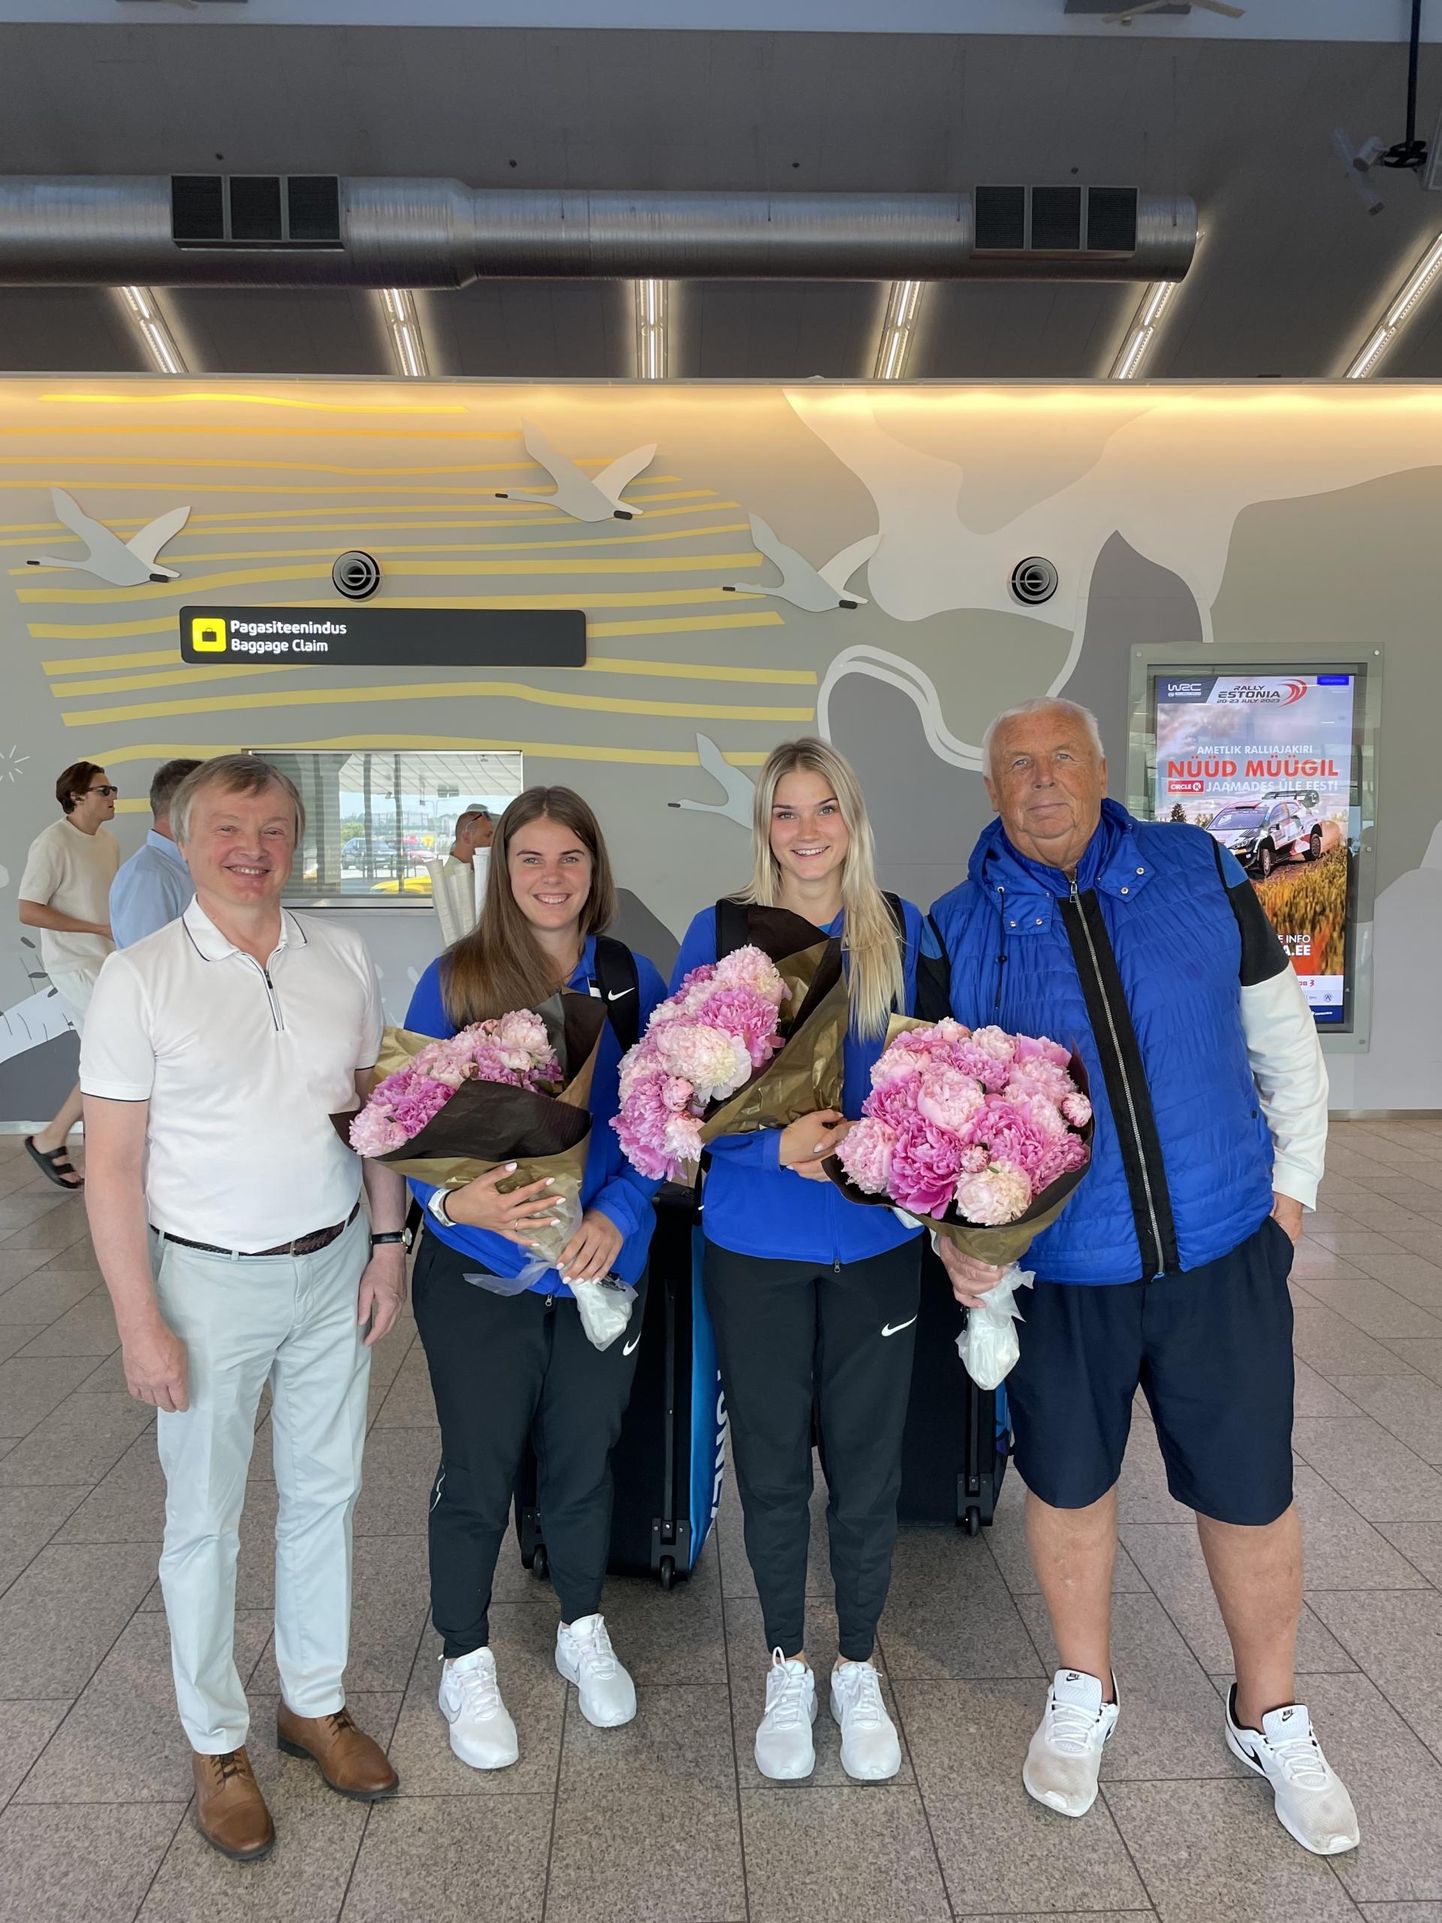 Tallinna lennujaama tuli Helina Rüütlit, Kati Kreet Marranit ja nende treenerit Mart Siliksaart (paremalt esimene) vastu võtma Eesti sulgpalliliidu president Tiit Vapper.